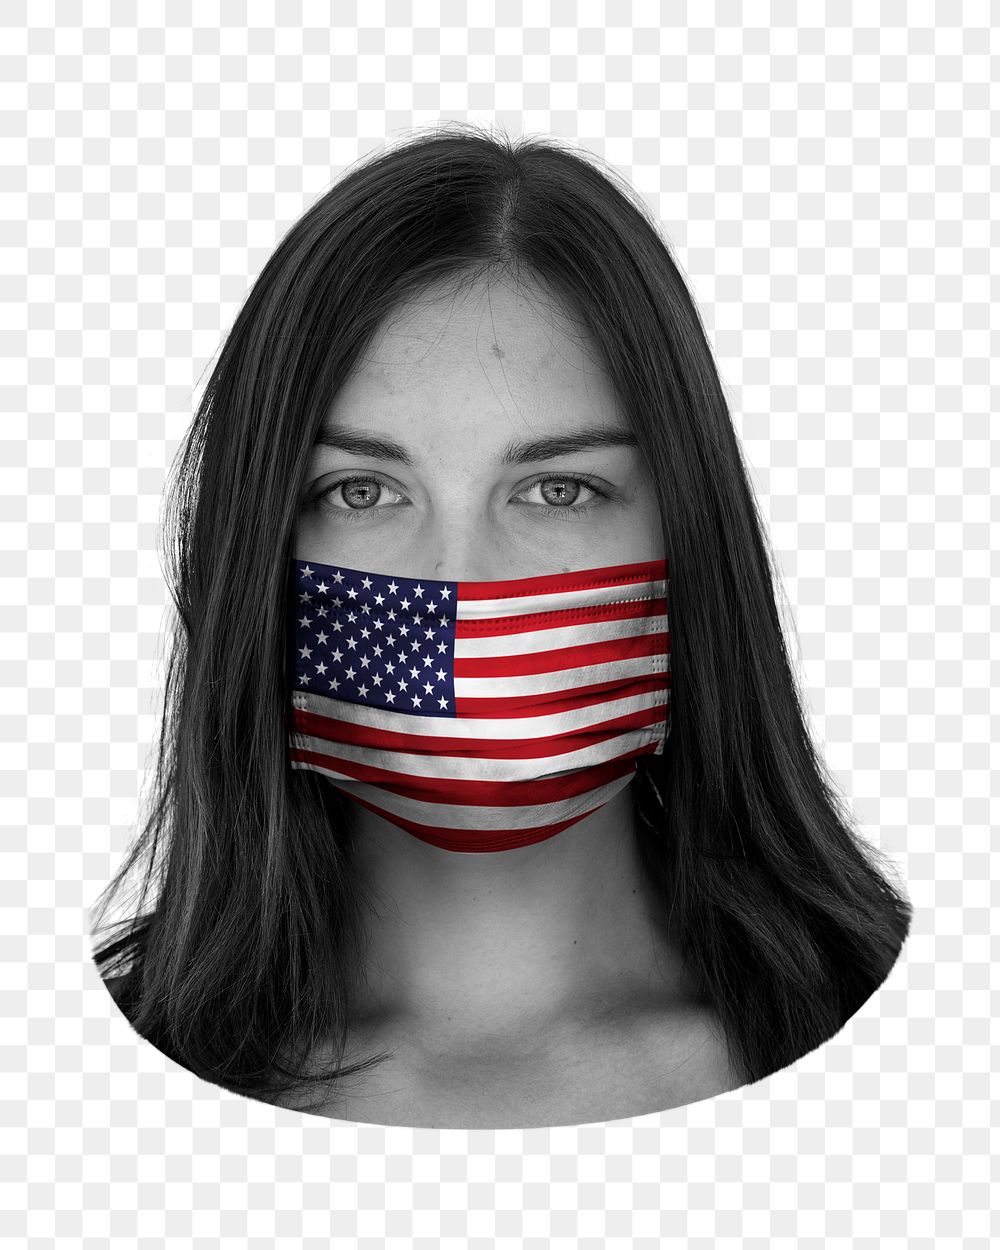 US flag png face mask, transparent background